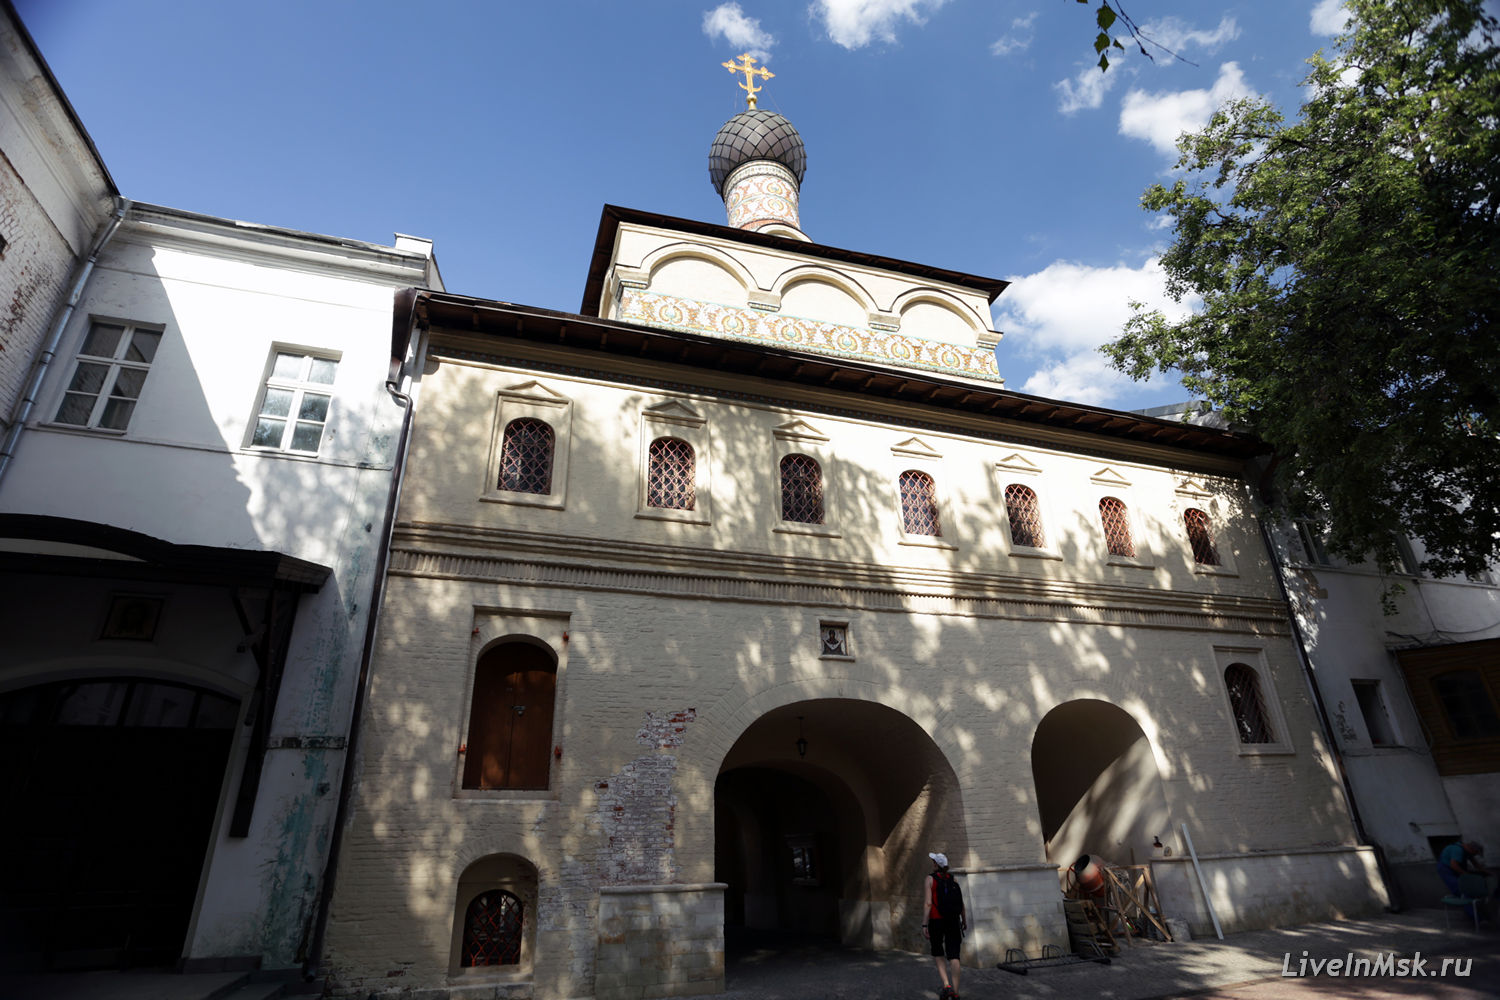 Андреевский монастырь, фото 2015 года